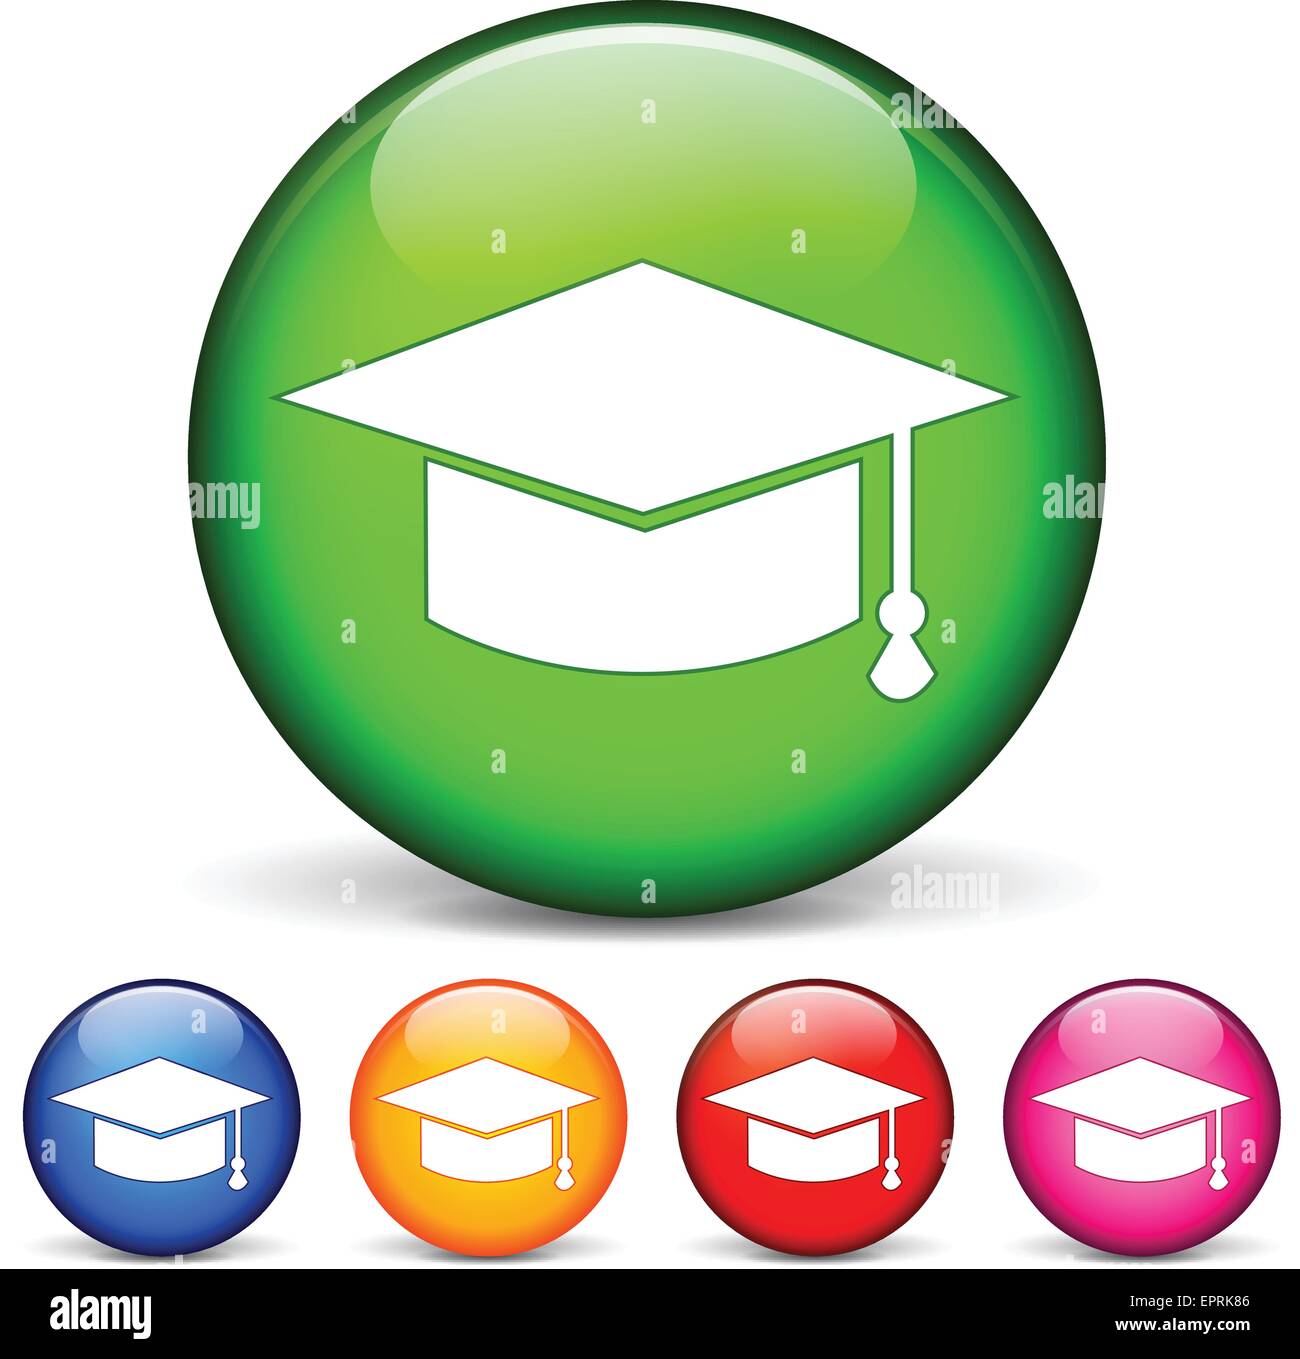 Vektor-Illustration von Kreis-Icons für Bildung Stock Vektor